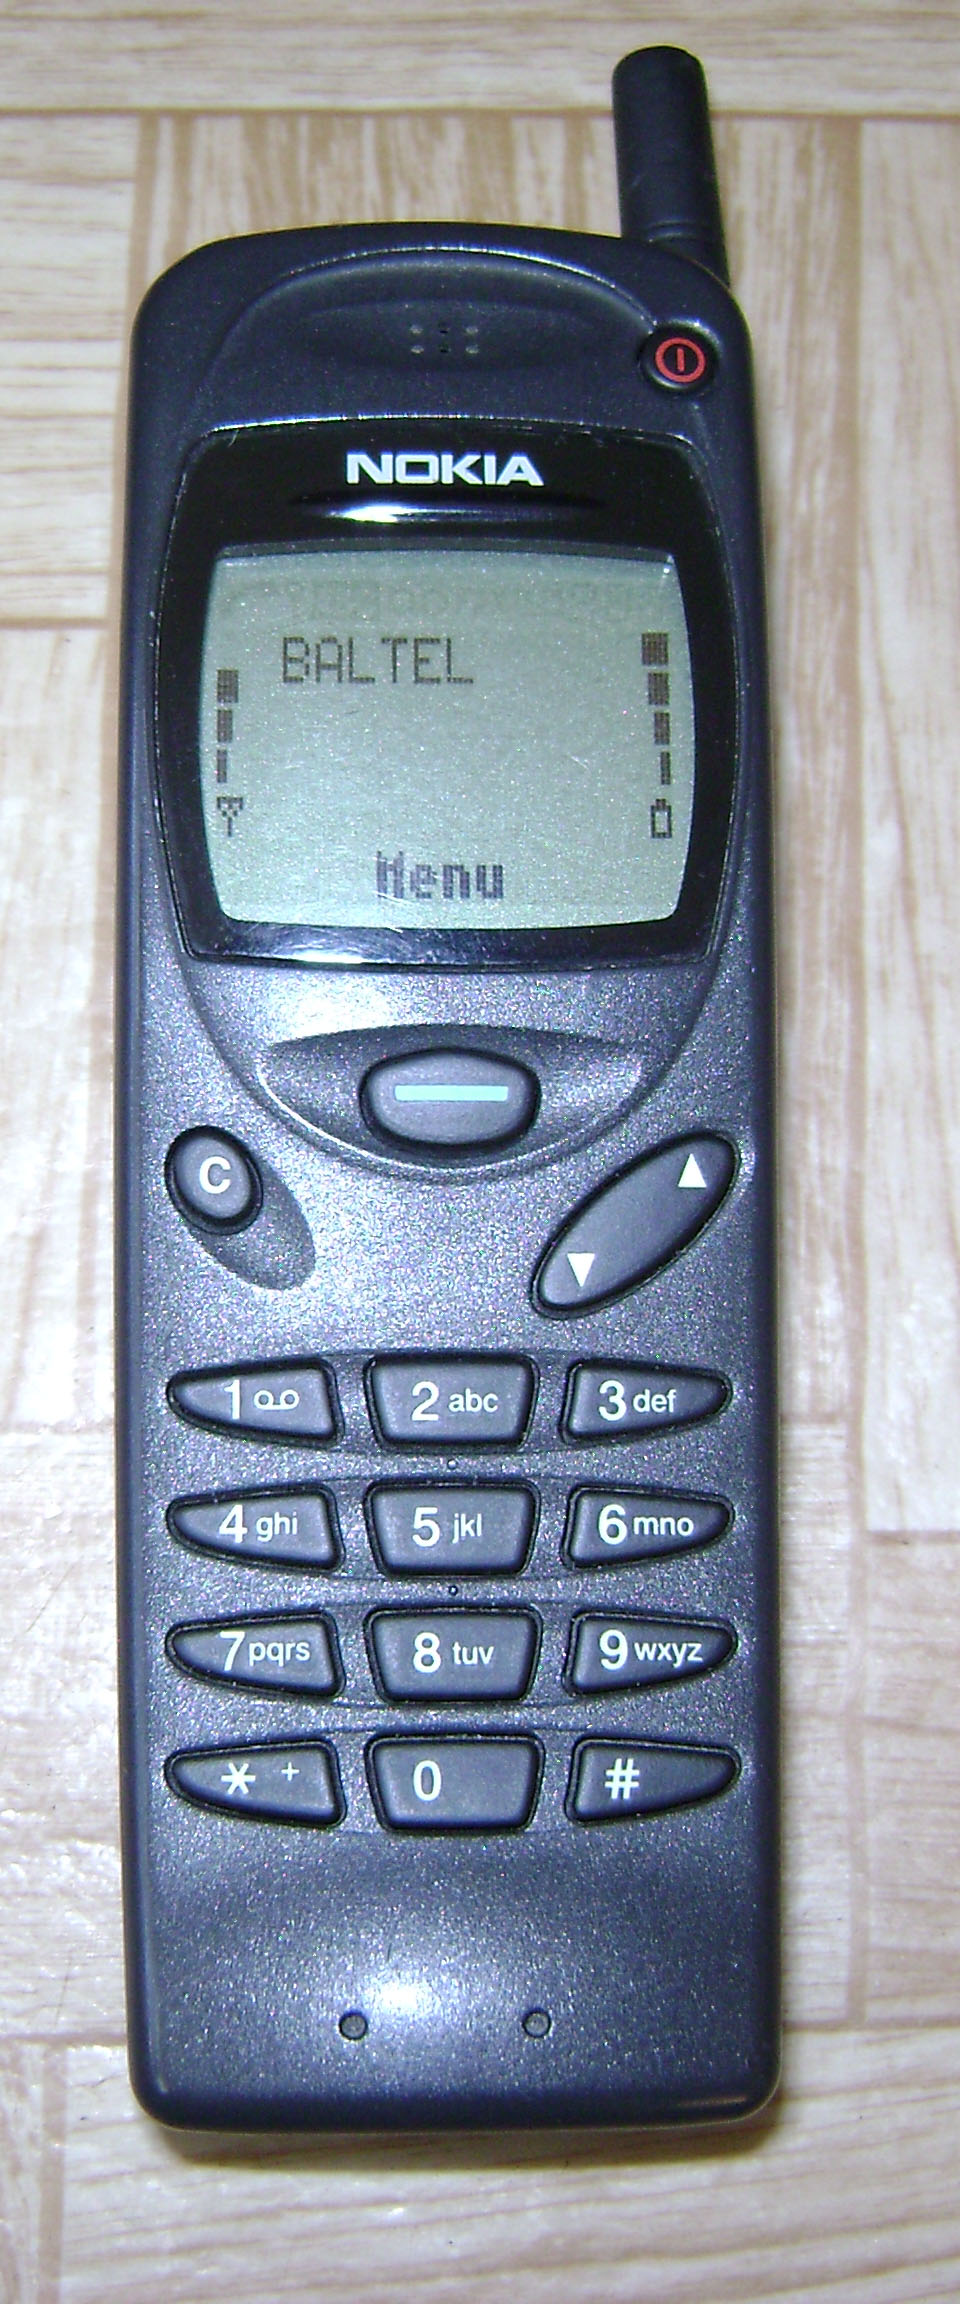 Nokia 3110 - Wikipedia